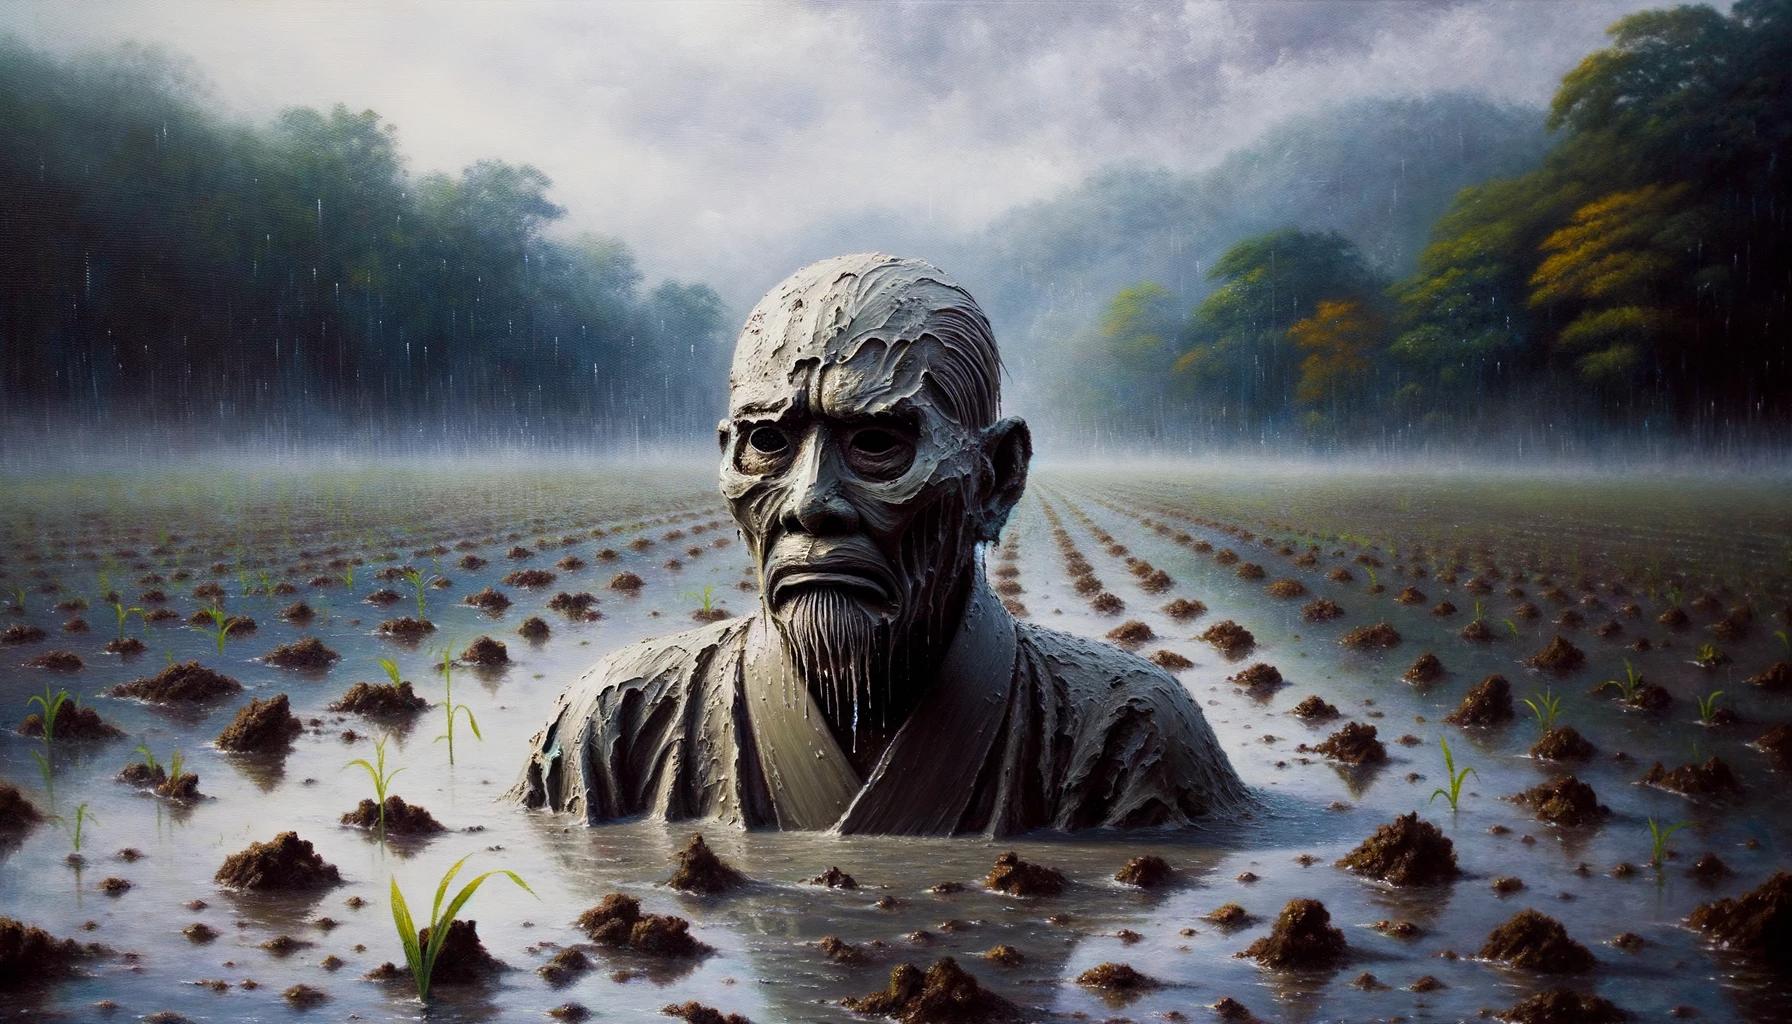 Dorotabo Yokai: The Vengeful Spirits of Neglected Rice Fields in Japanese Mythology